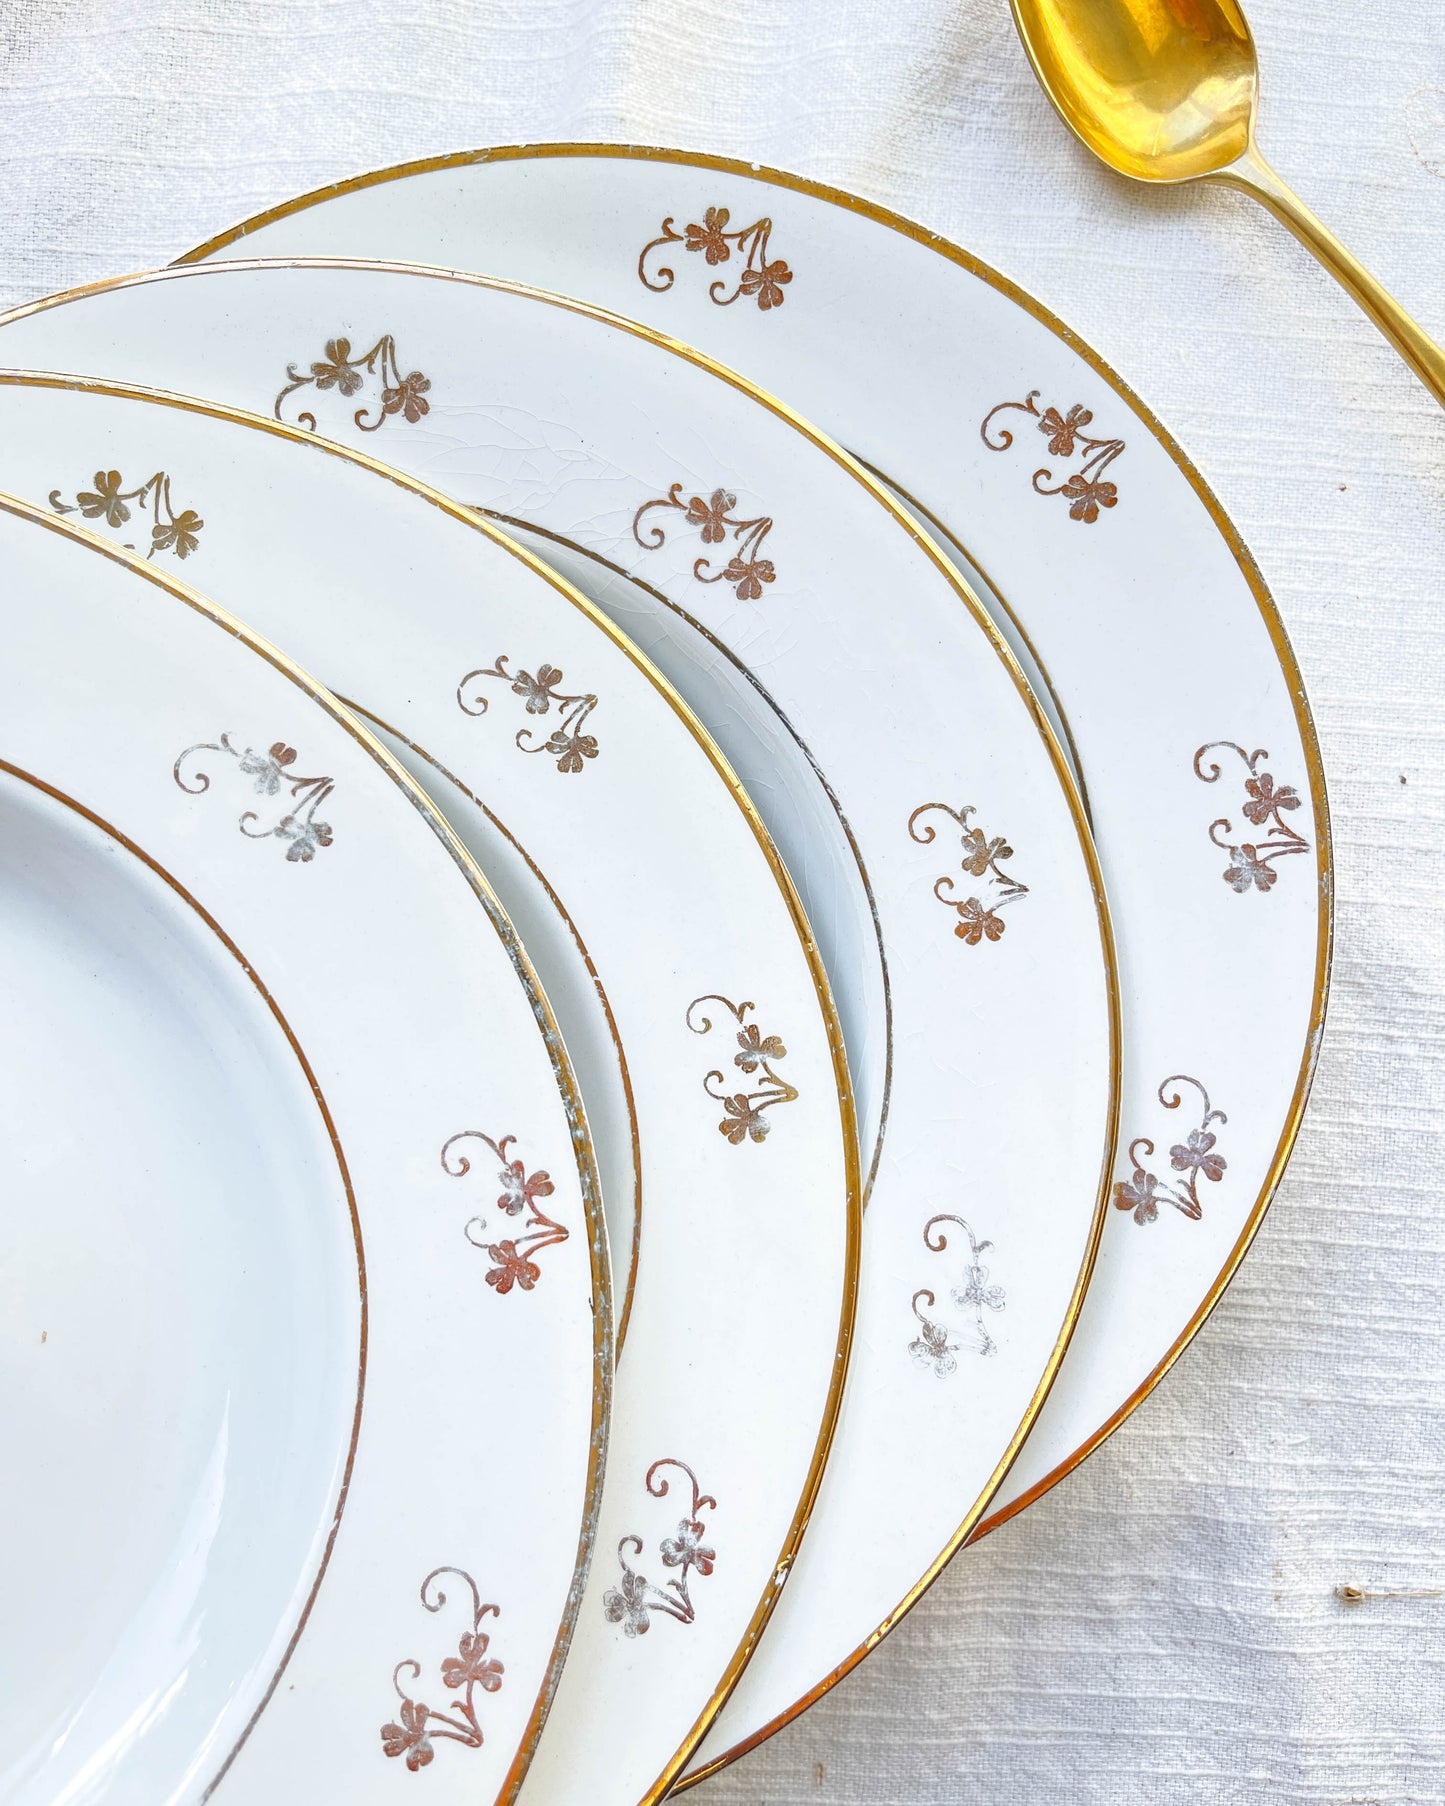 Assiette creuse Vintage blanche et doré. Ces jolies assiettes blanches  ornées d'un liseret doré apporteront charme et…